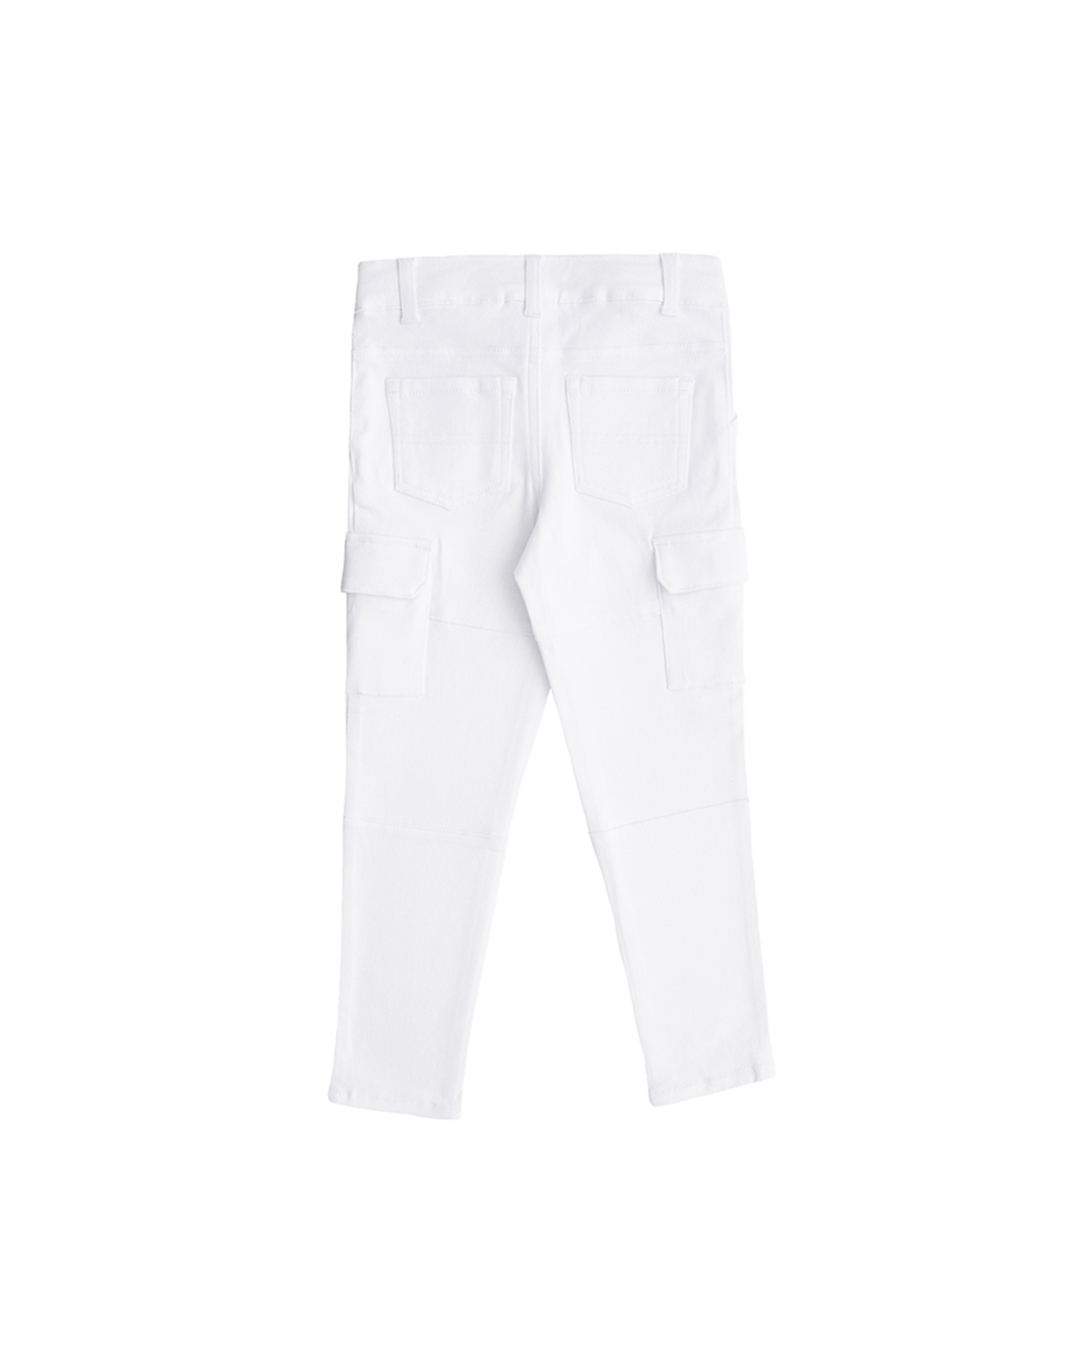 Pantalón blanco con bolsillos